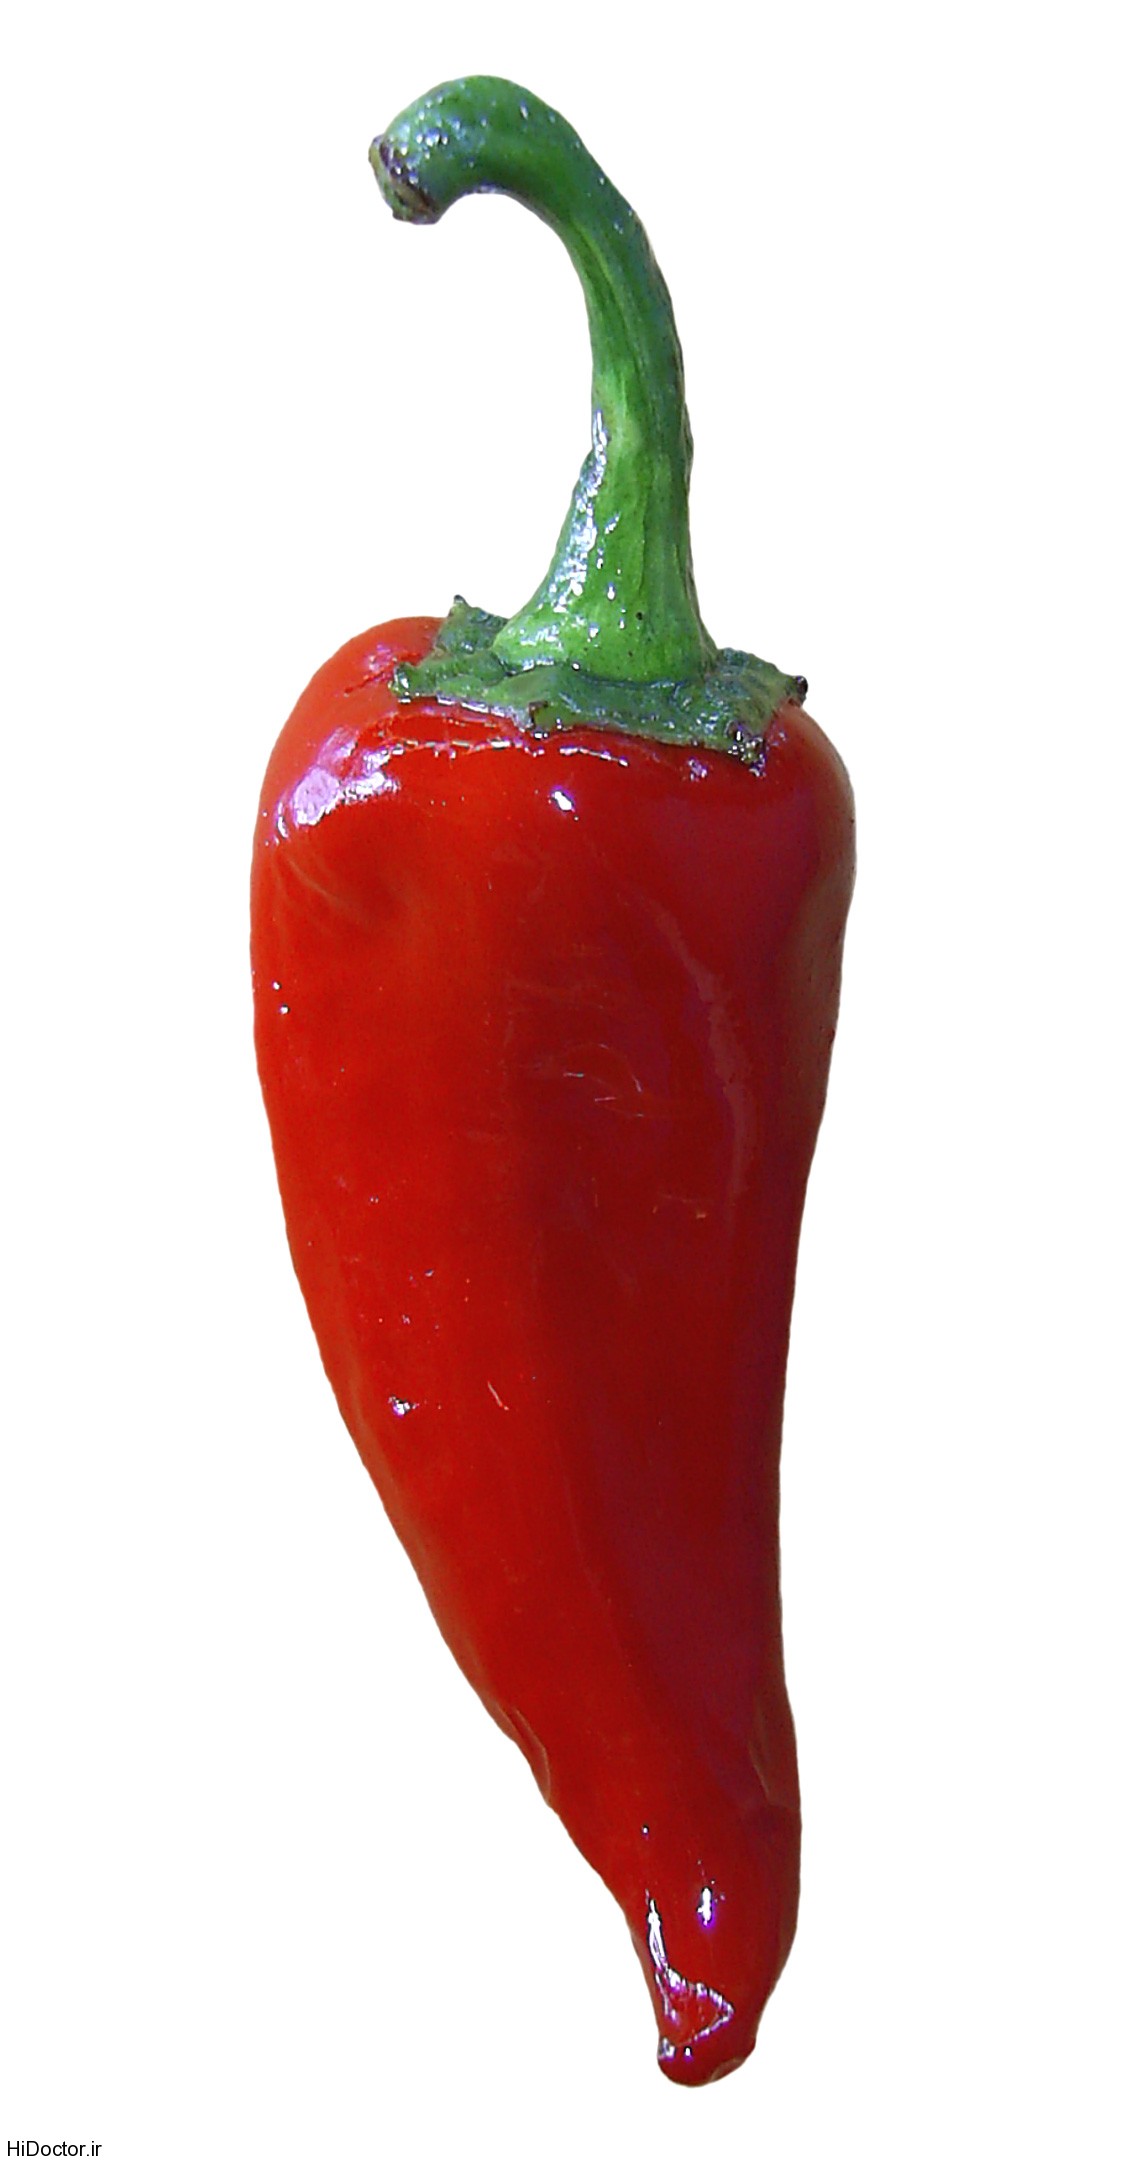 Red-pepper